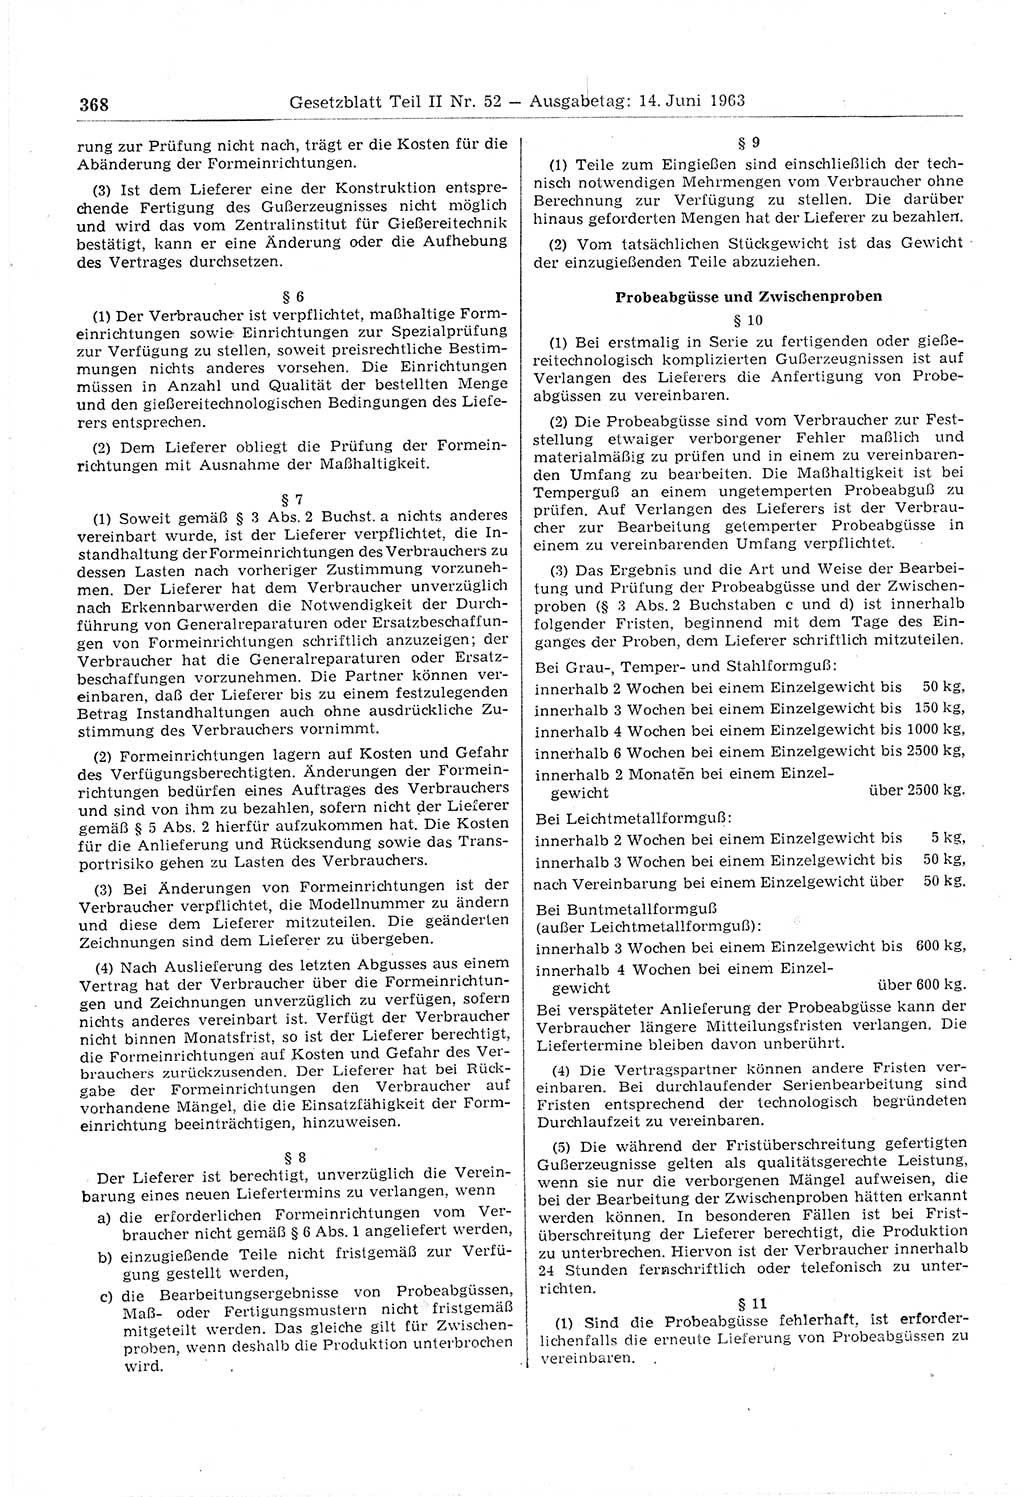 Gesetzblatt (GBl.) der Deutschen Demokratischen Republik (DDR) Teil ⅠⅠ 1963, Seite 368 (GBl. DDR ⅠⅠ 1963, S. 368)